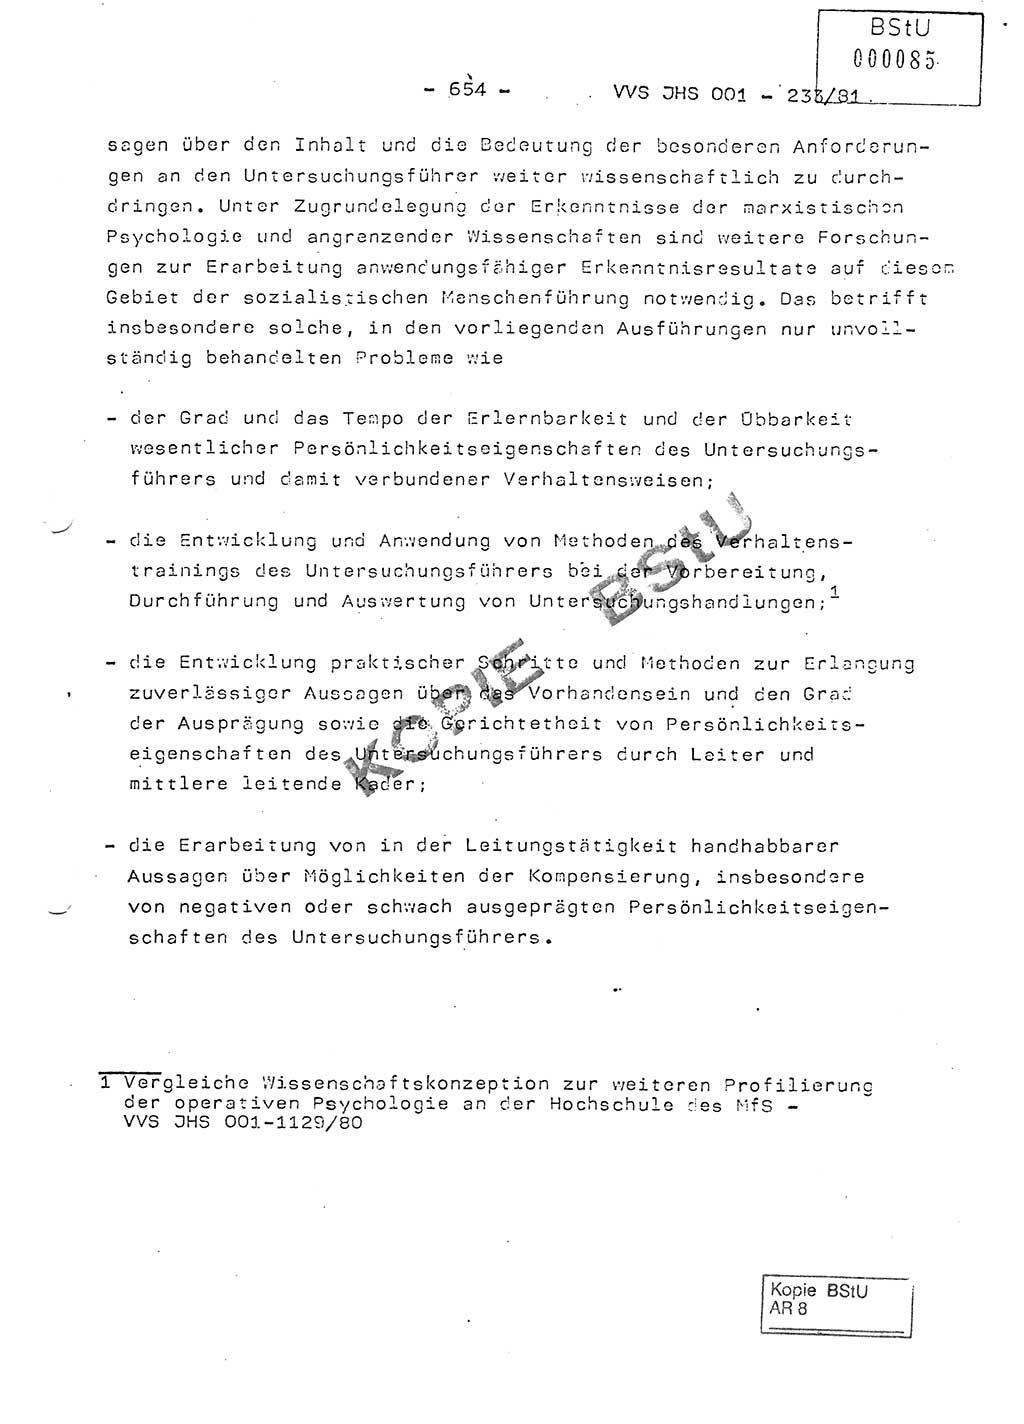 Dissertation Oberstleutnant Horst Zank (JHS), Oberstleutnant Dr. Karl-Heinz Knoblauch (JHS), Oberstleutnant Gustav-Adolf Kowalewski (HA Ⅸ), Oberstleutnant Wolfgang Plötner (HA Ⅸ), Ministerium für Staatssicherheit (MfS) [Deutsche Demokratische Republik (DDR)], Juristische Hochschule (JHS), Vertrauliche Verschlußsache (VVS) o001-233/81, Potsdam 1981, Blatt 654 (Diss. MfS DDR JHS VVS o001-233/81 1981, Bl. 654)